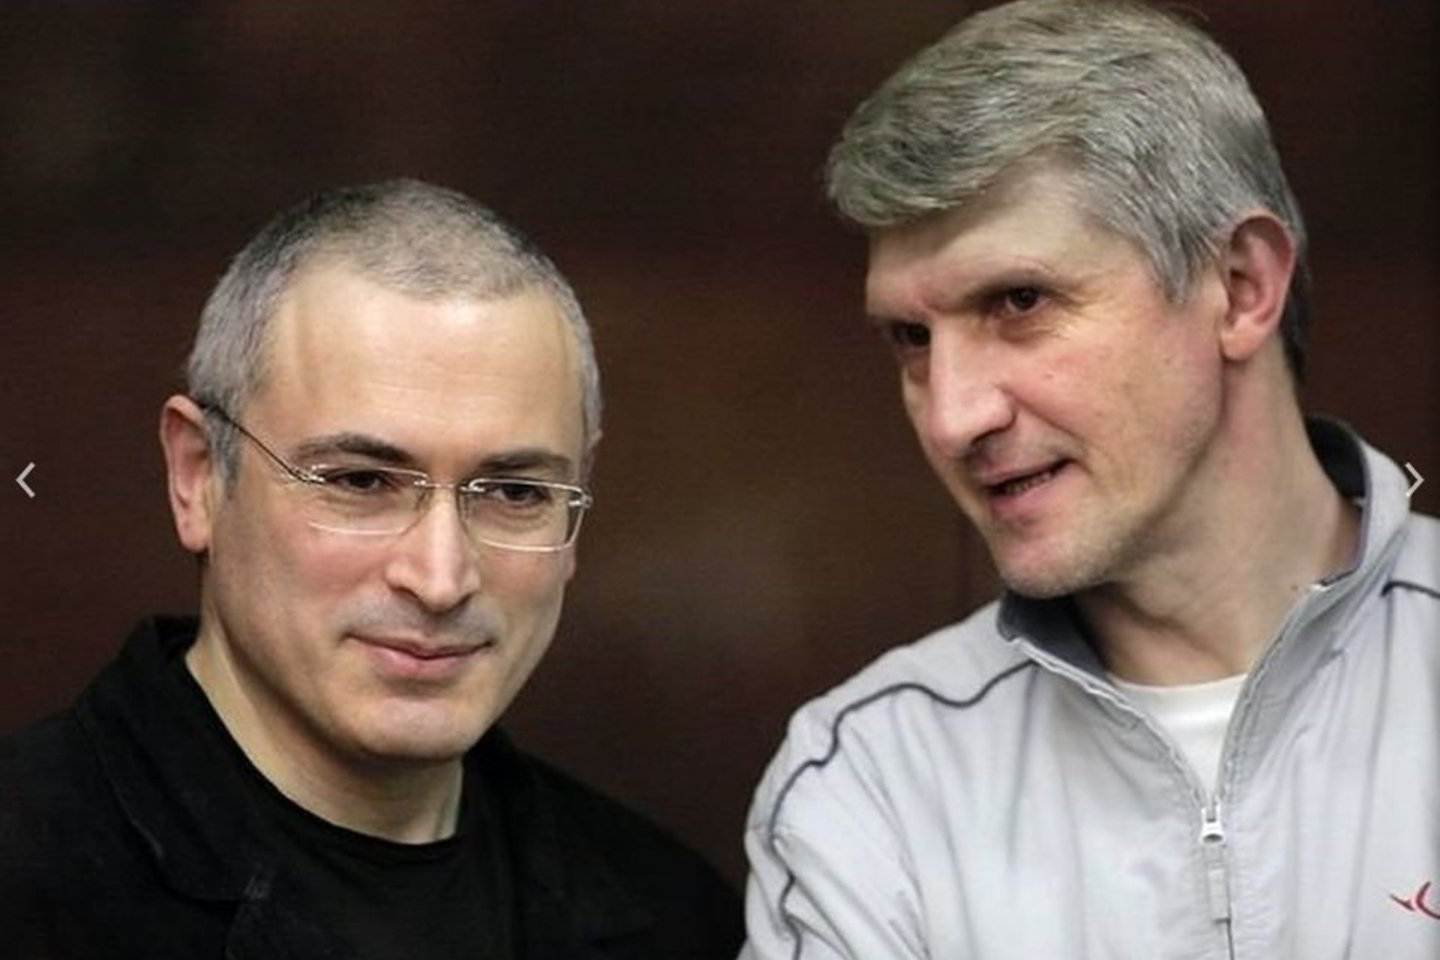 M.Chodorkovskio bendražygis ir verslo partneris P.Lebedevas, grupės „Menatep“ direktorių tarybos vadovas (dešinėje).<br>AP nuotr. iš archyvo.